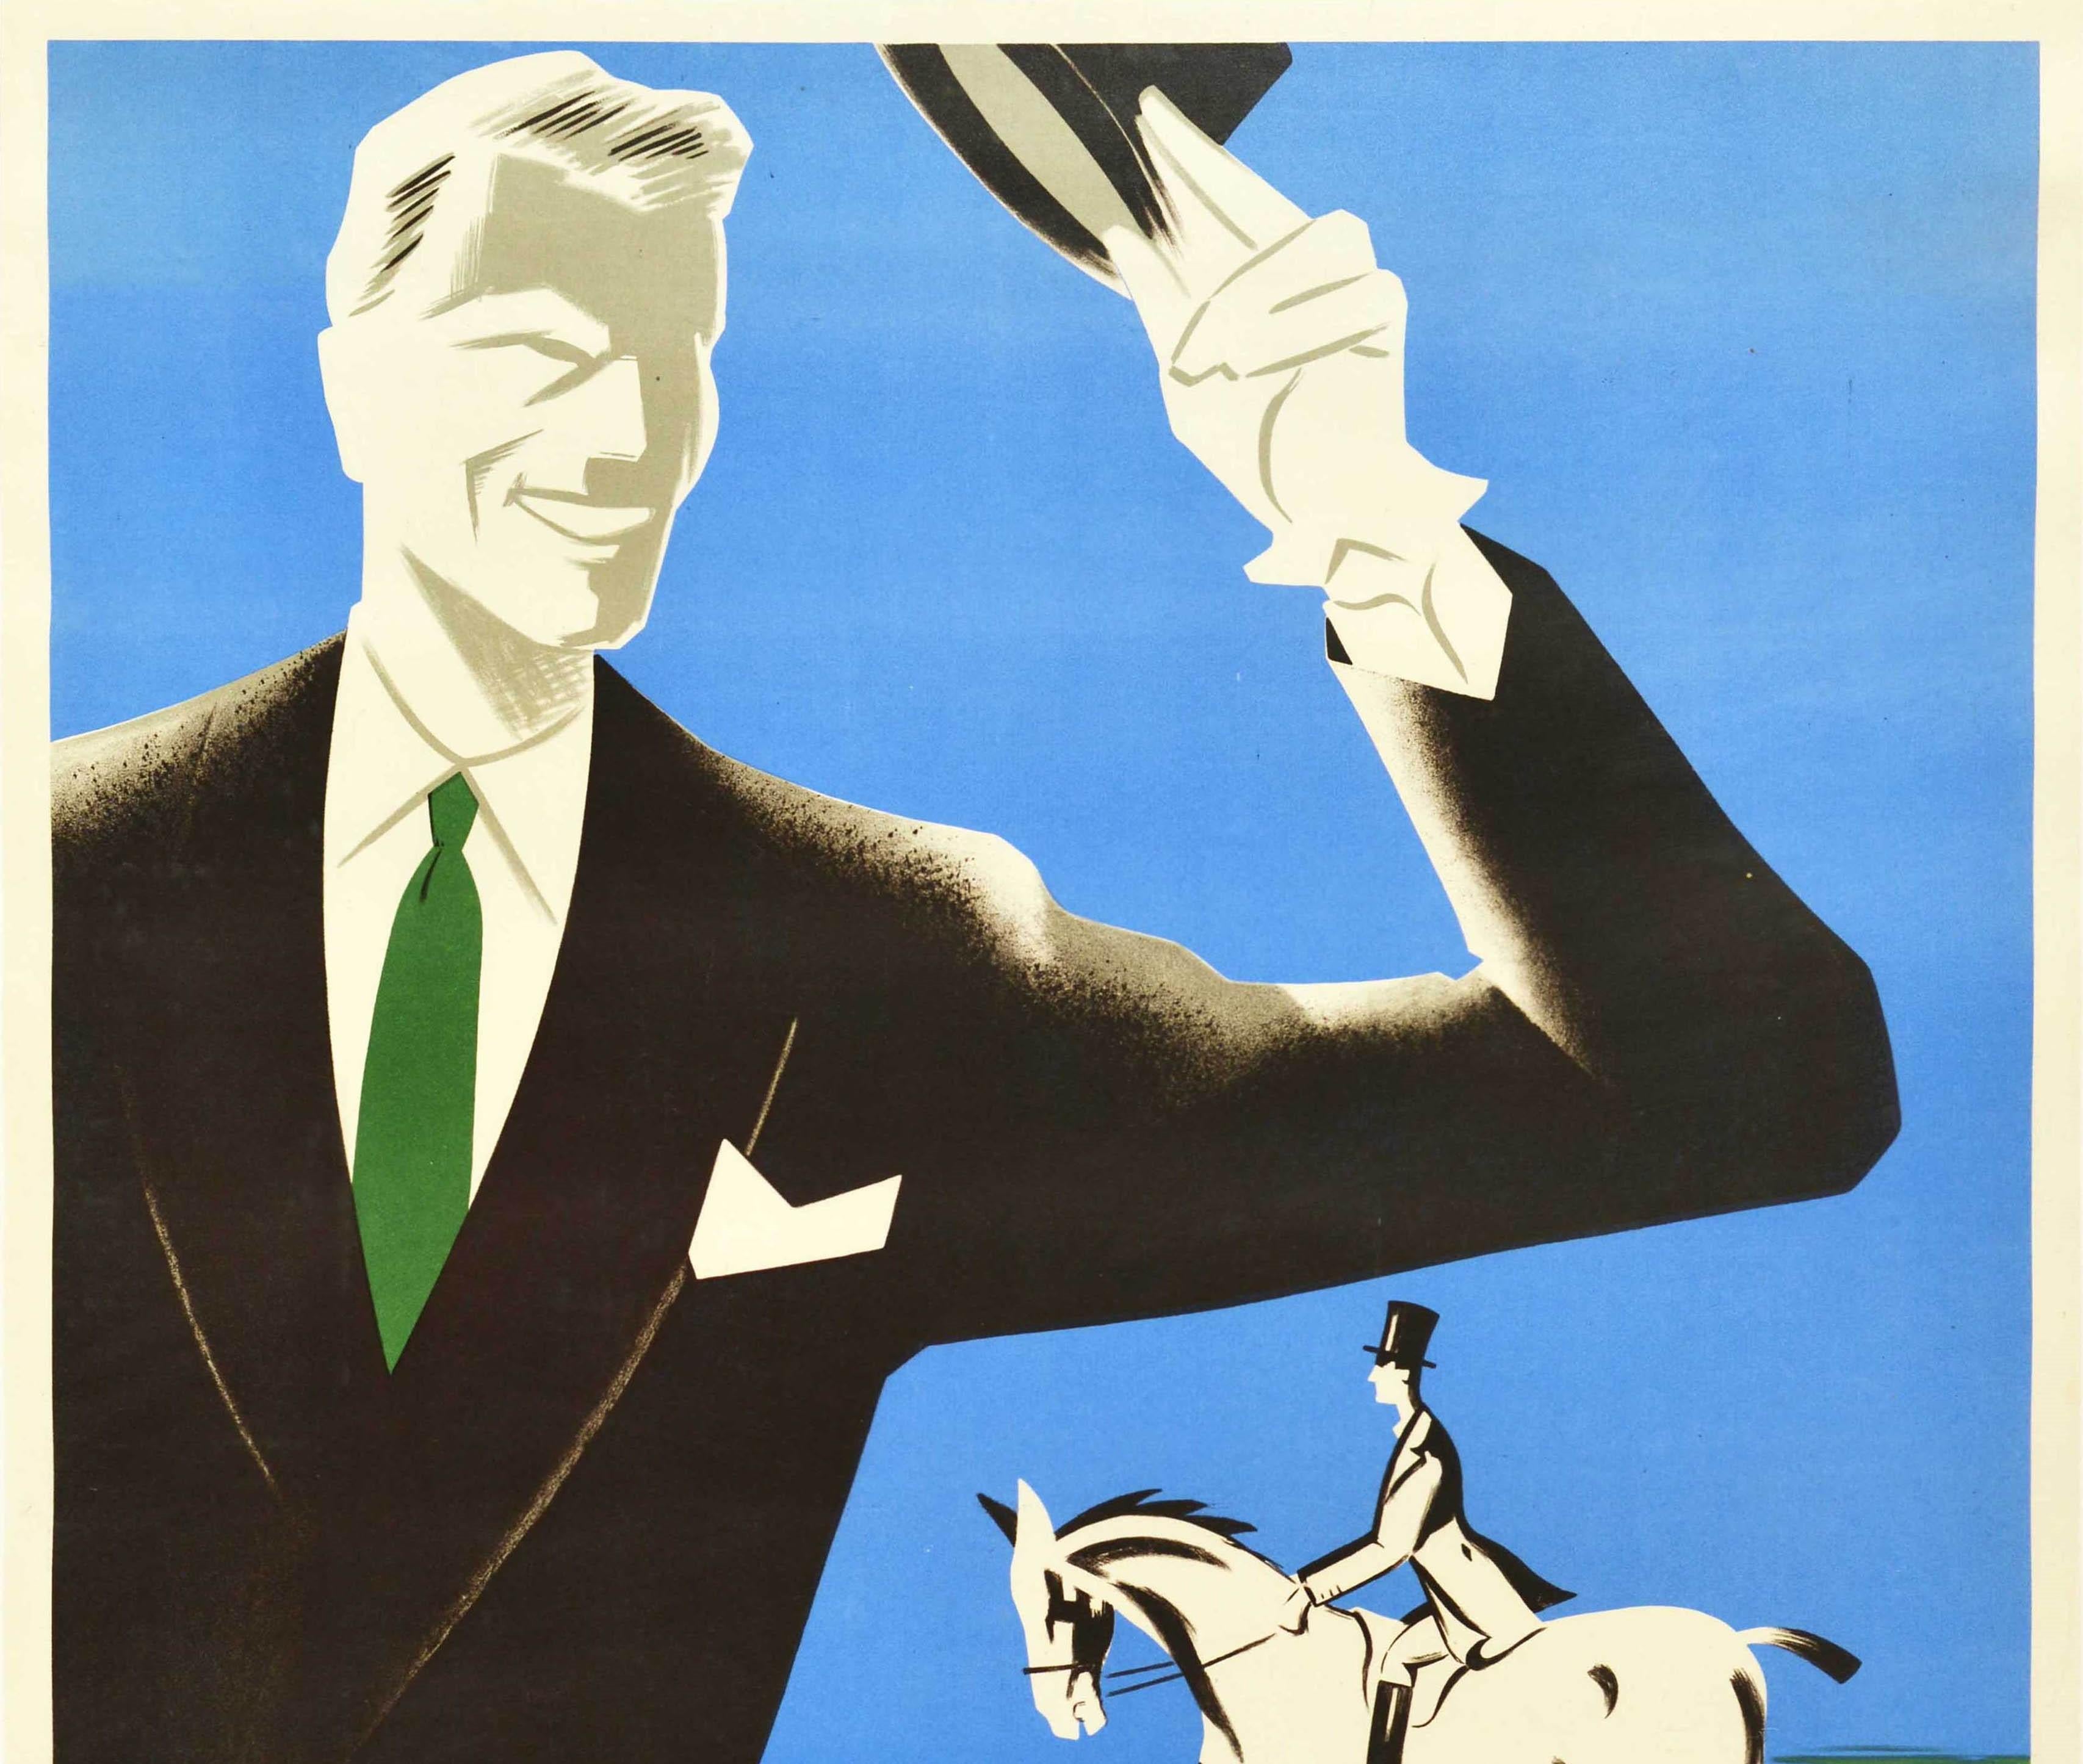 Originales Werbeplakat für Herrenmode - The clothing that classifies an Epsom man / Le vetement qui classe un homme Epsom - mit einem großartigen Art-Deco-Design, das einen lächelnden Herrn in einem eleganten Anzug und einer grünen Krawatte zeigt,